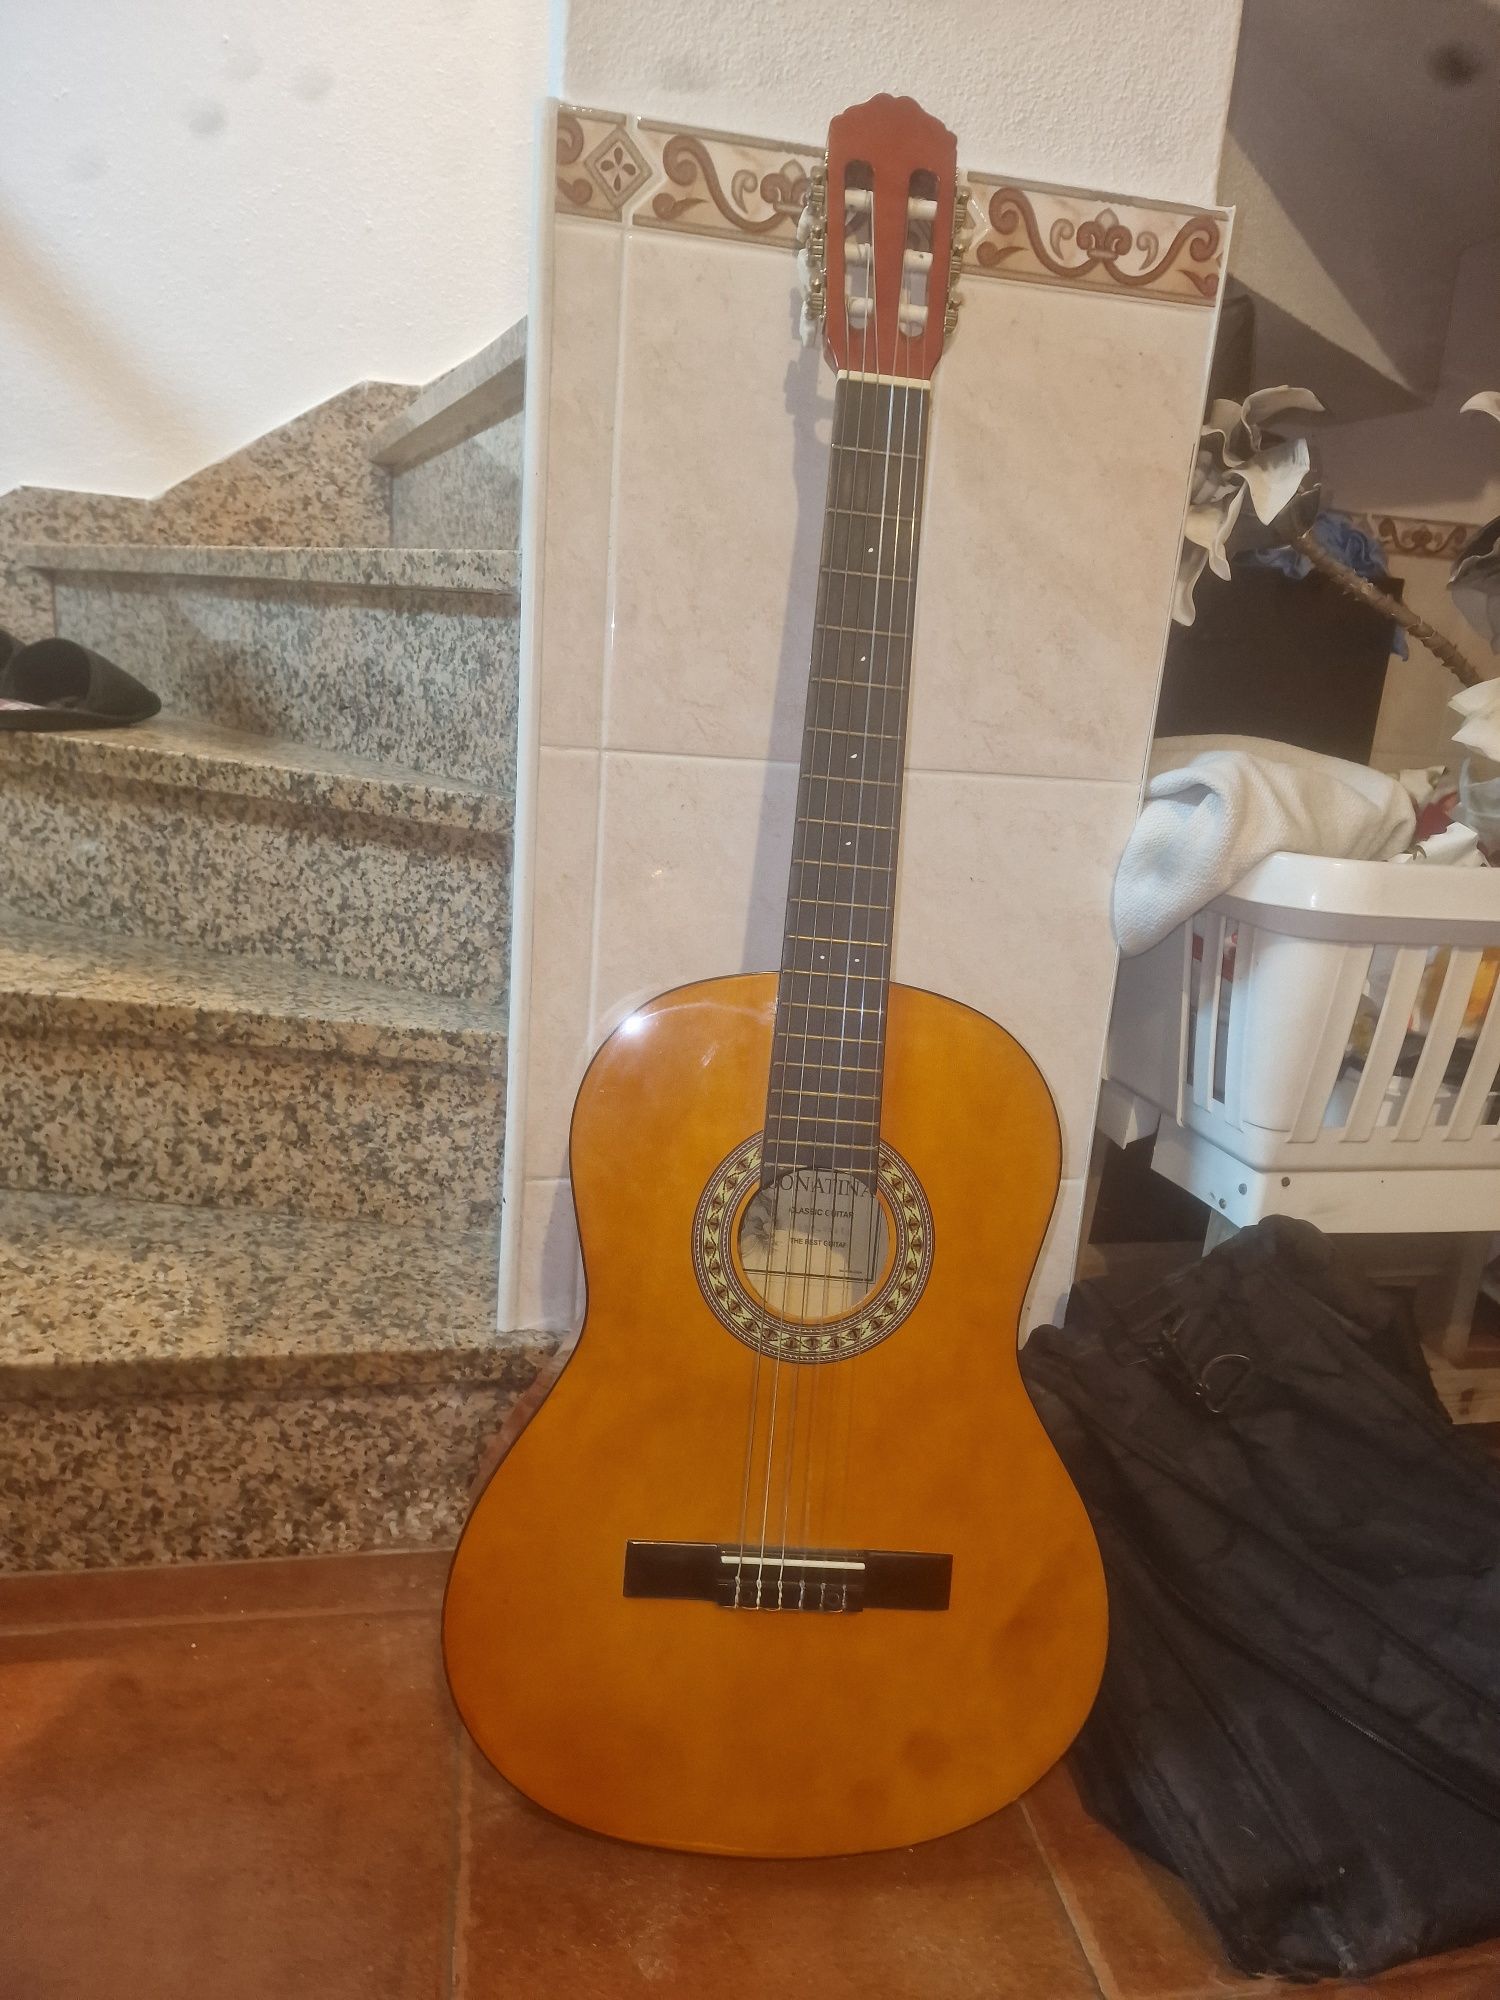 Guitarra clássica da marca Sonatina